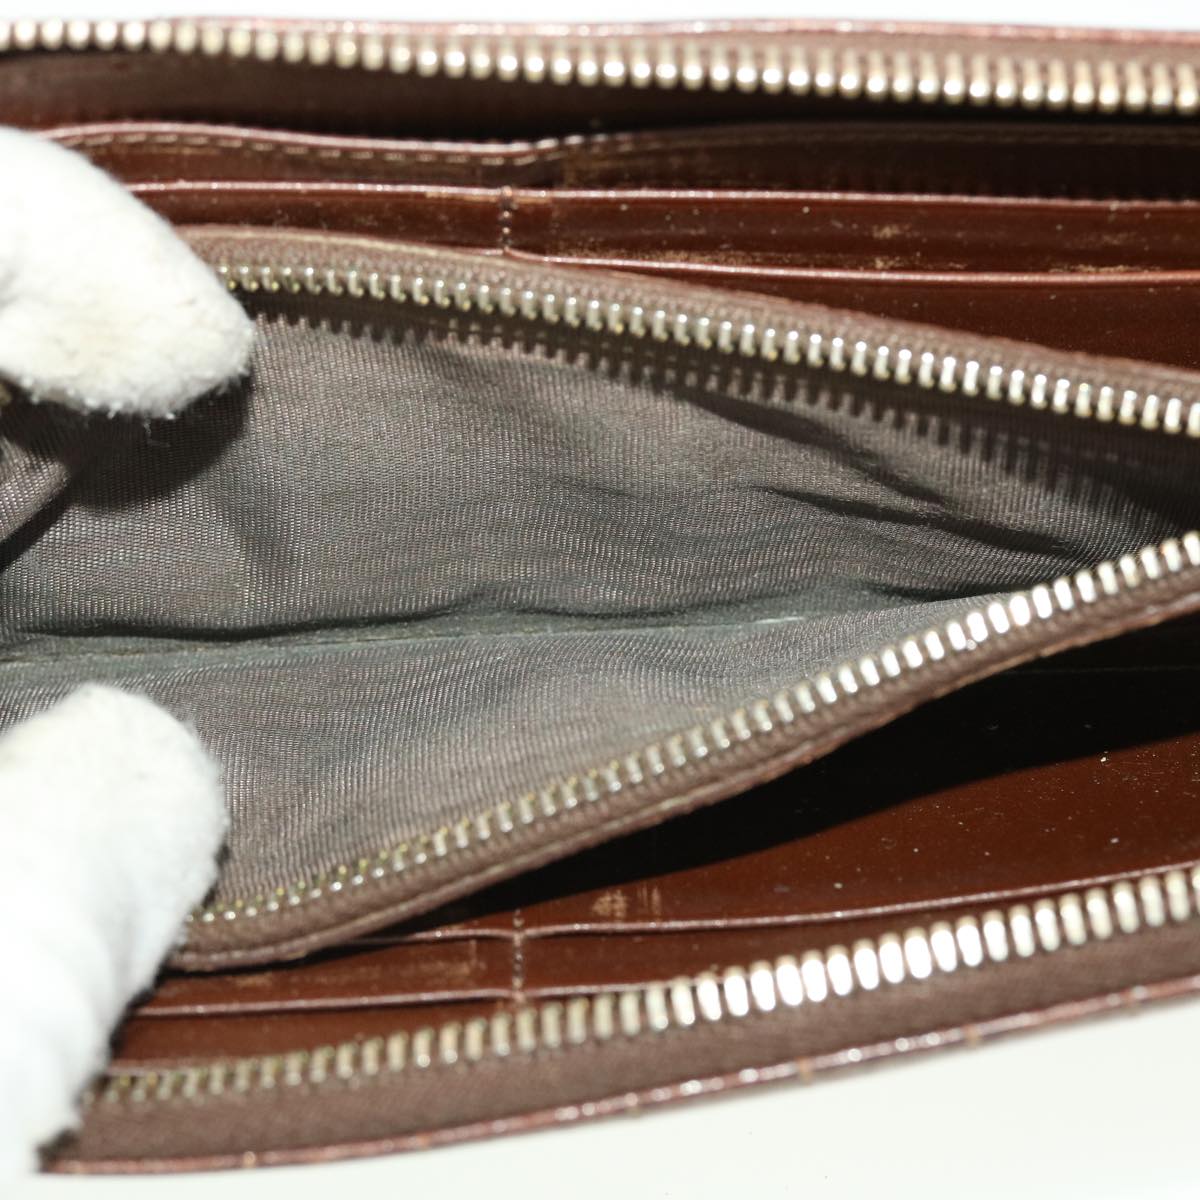 Miu Miu Wallet Leather 4Set Pink Black Brown Auth bs5382